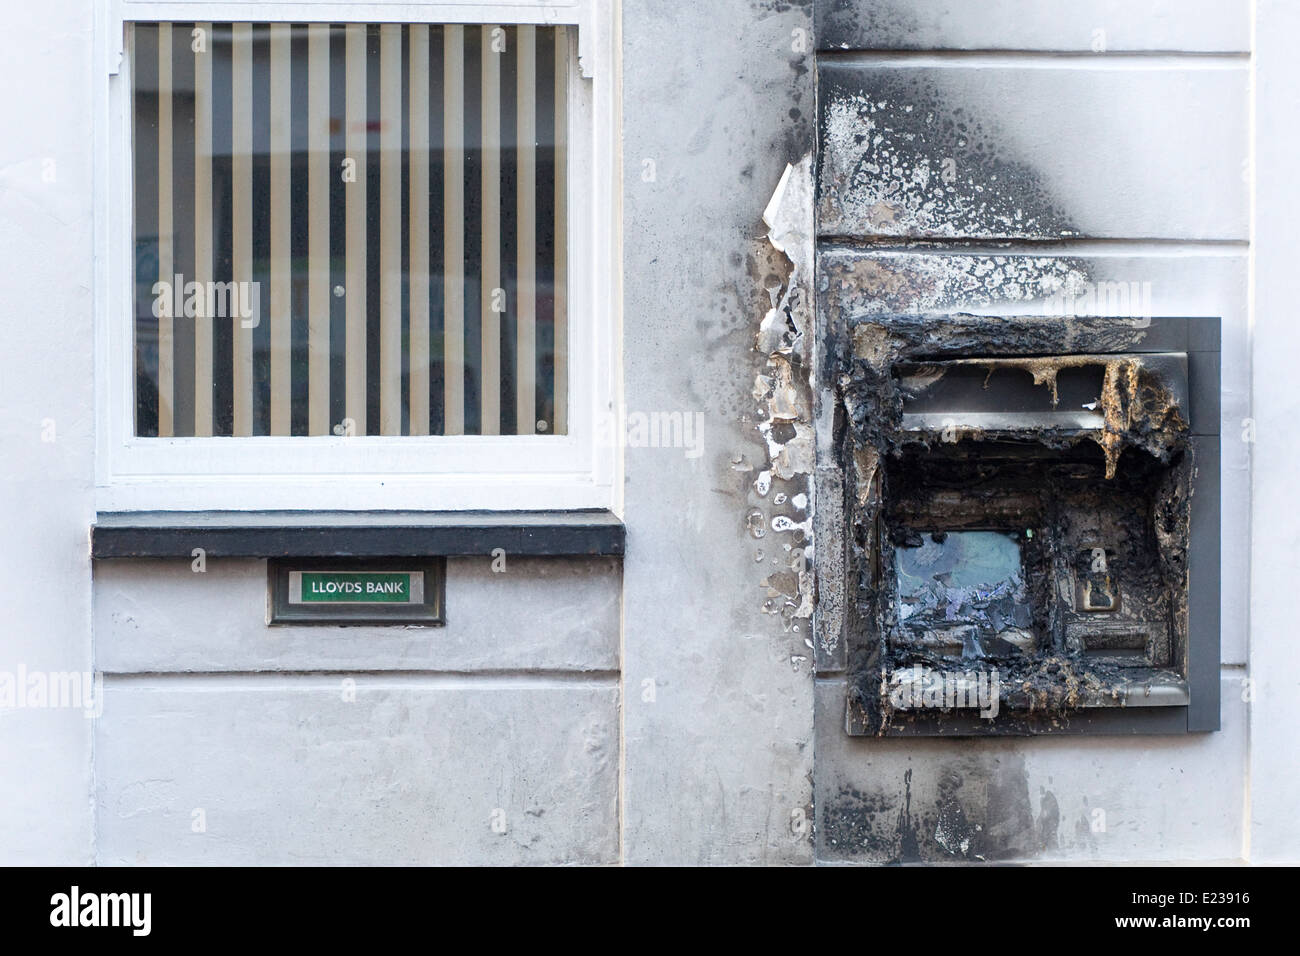 Lloyds Bank ATM gezielt durch einen Brandstifter Brand gesetzt und in einem zufälligen Akt des Vandalismus ausgebrannt Stockfoto